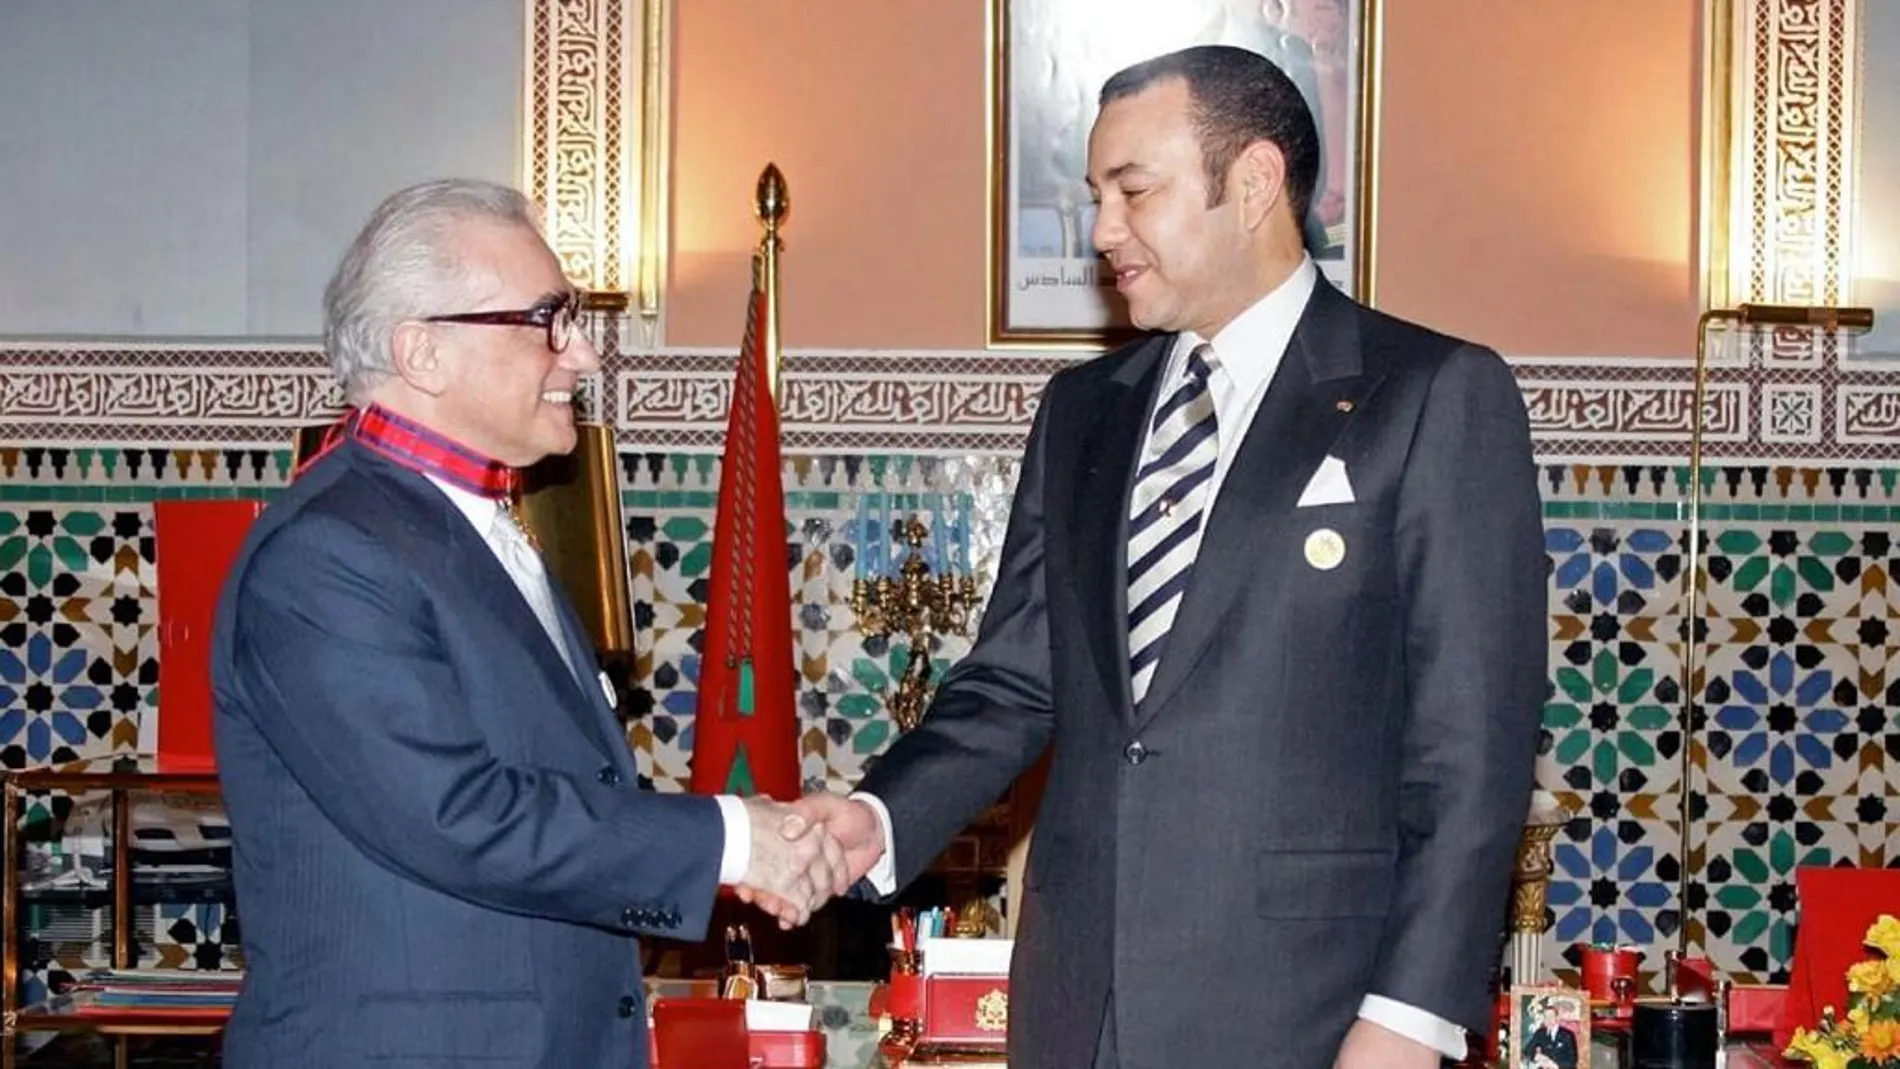 S.M. el Rey Mohammed VI condecorando al director estadounidense Martin Scorcese, durante el festival de 2005